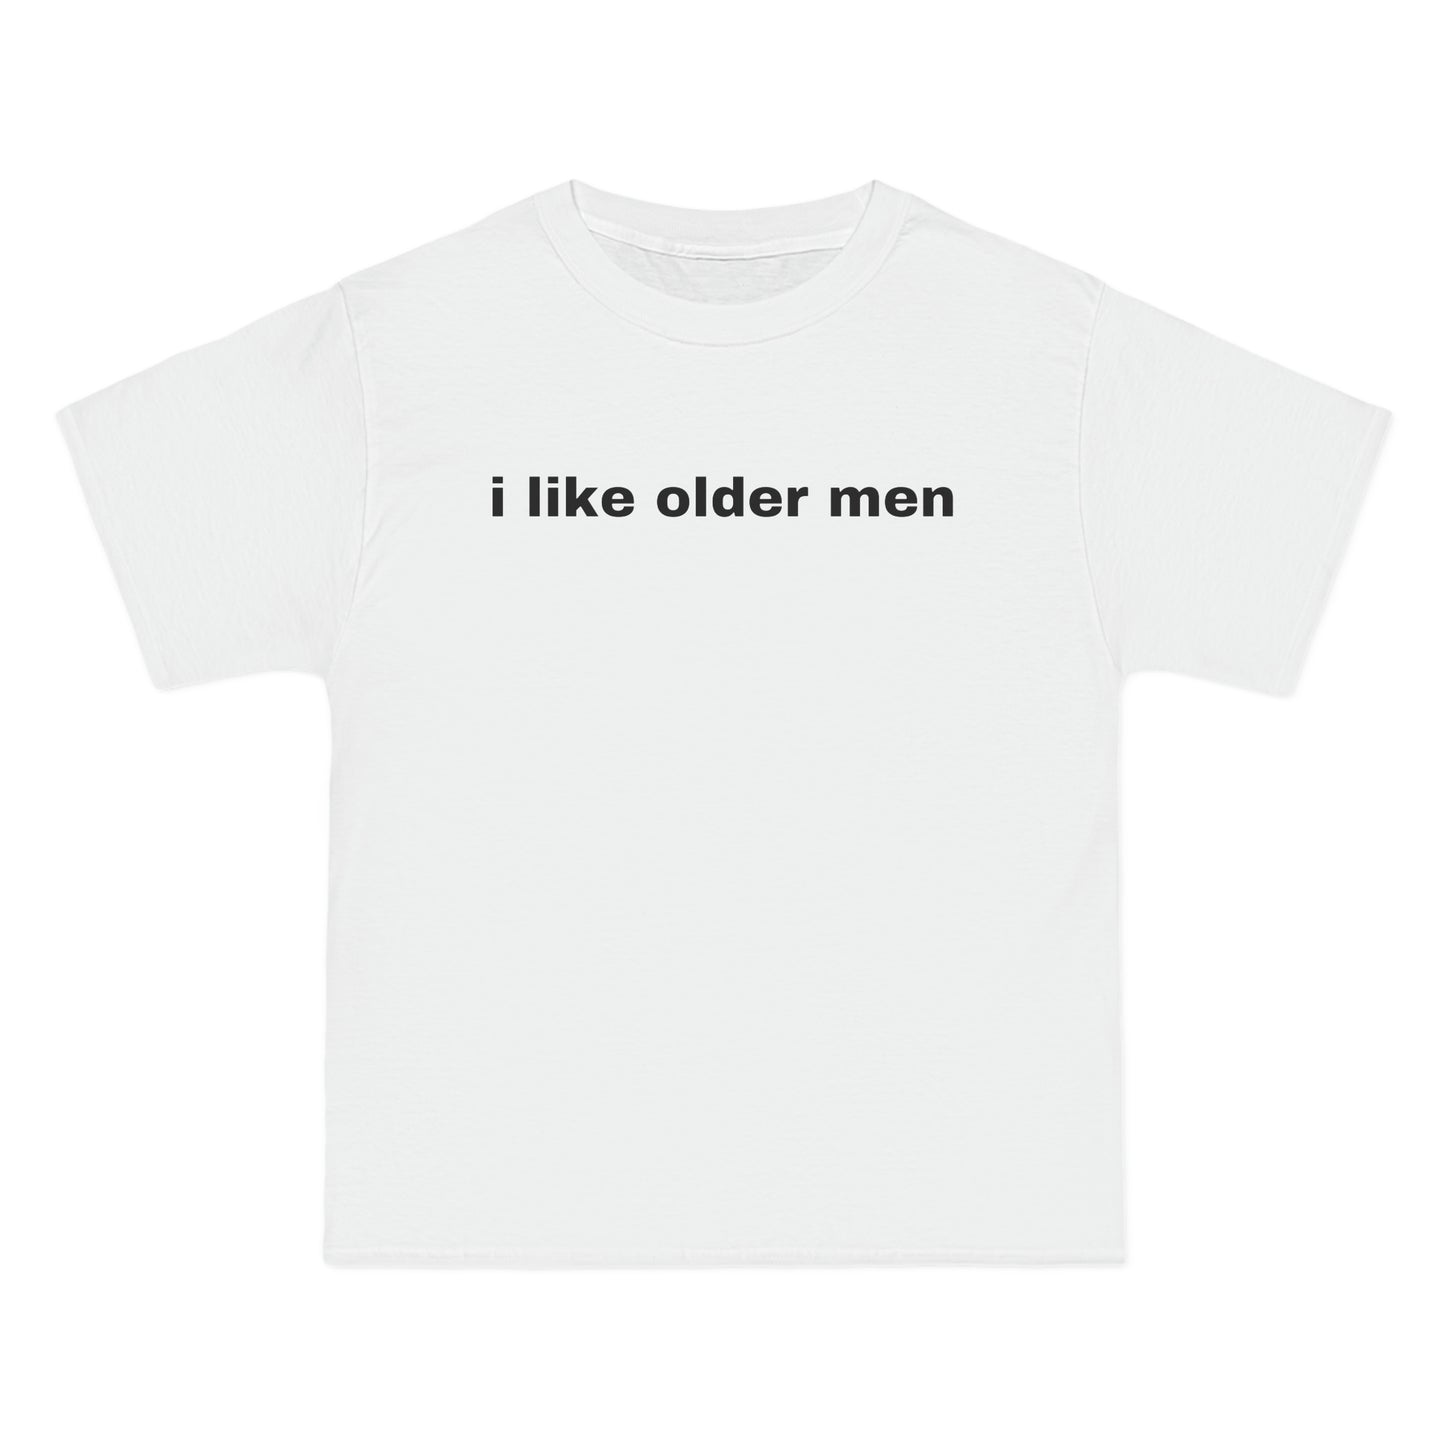 i like older men Tee